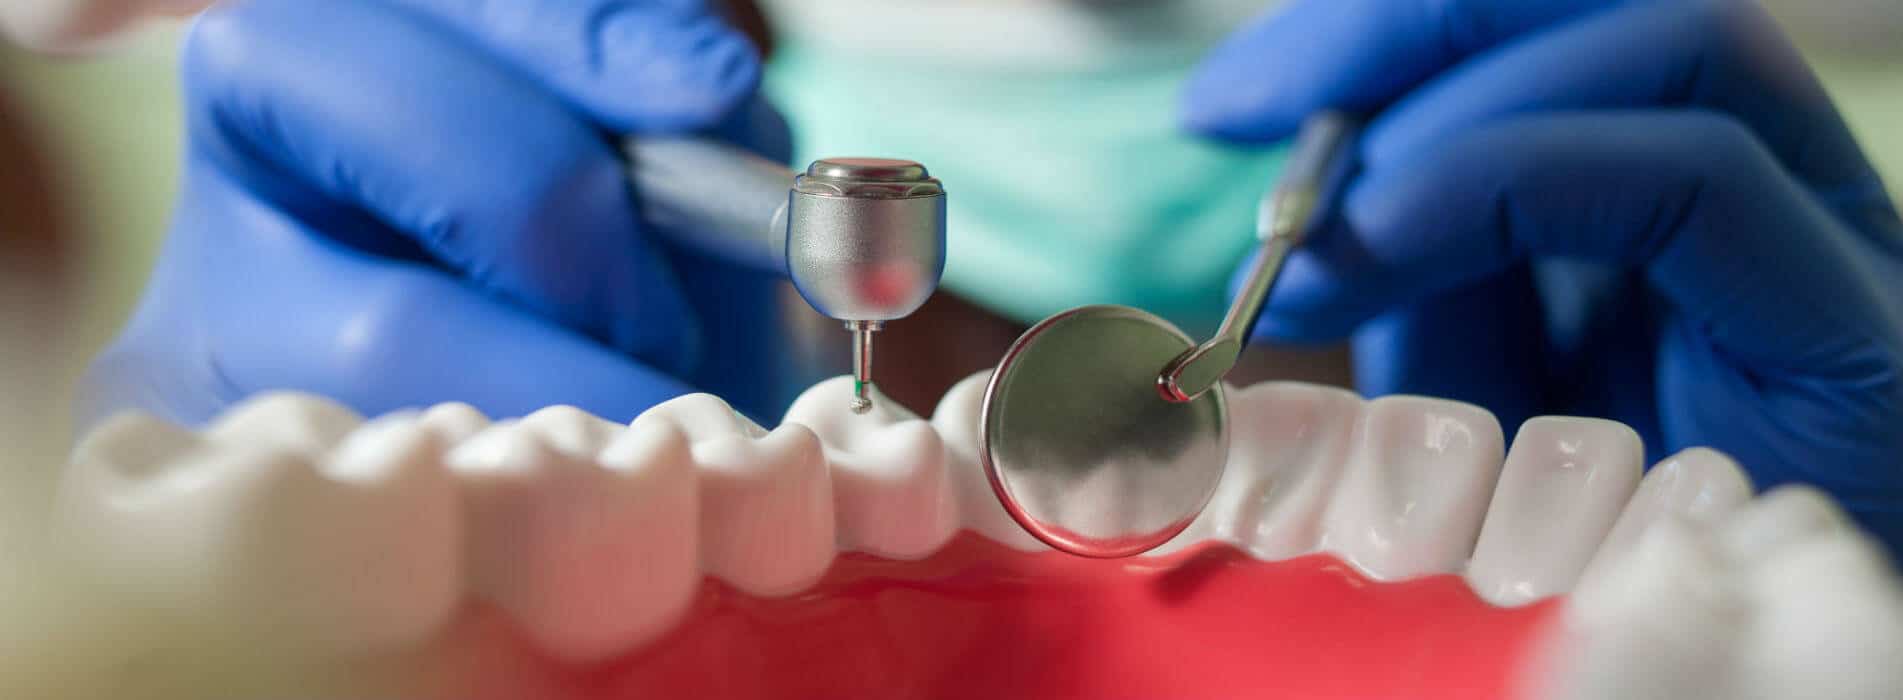 dentista examinando dientes por la posibilidad de endodoncia